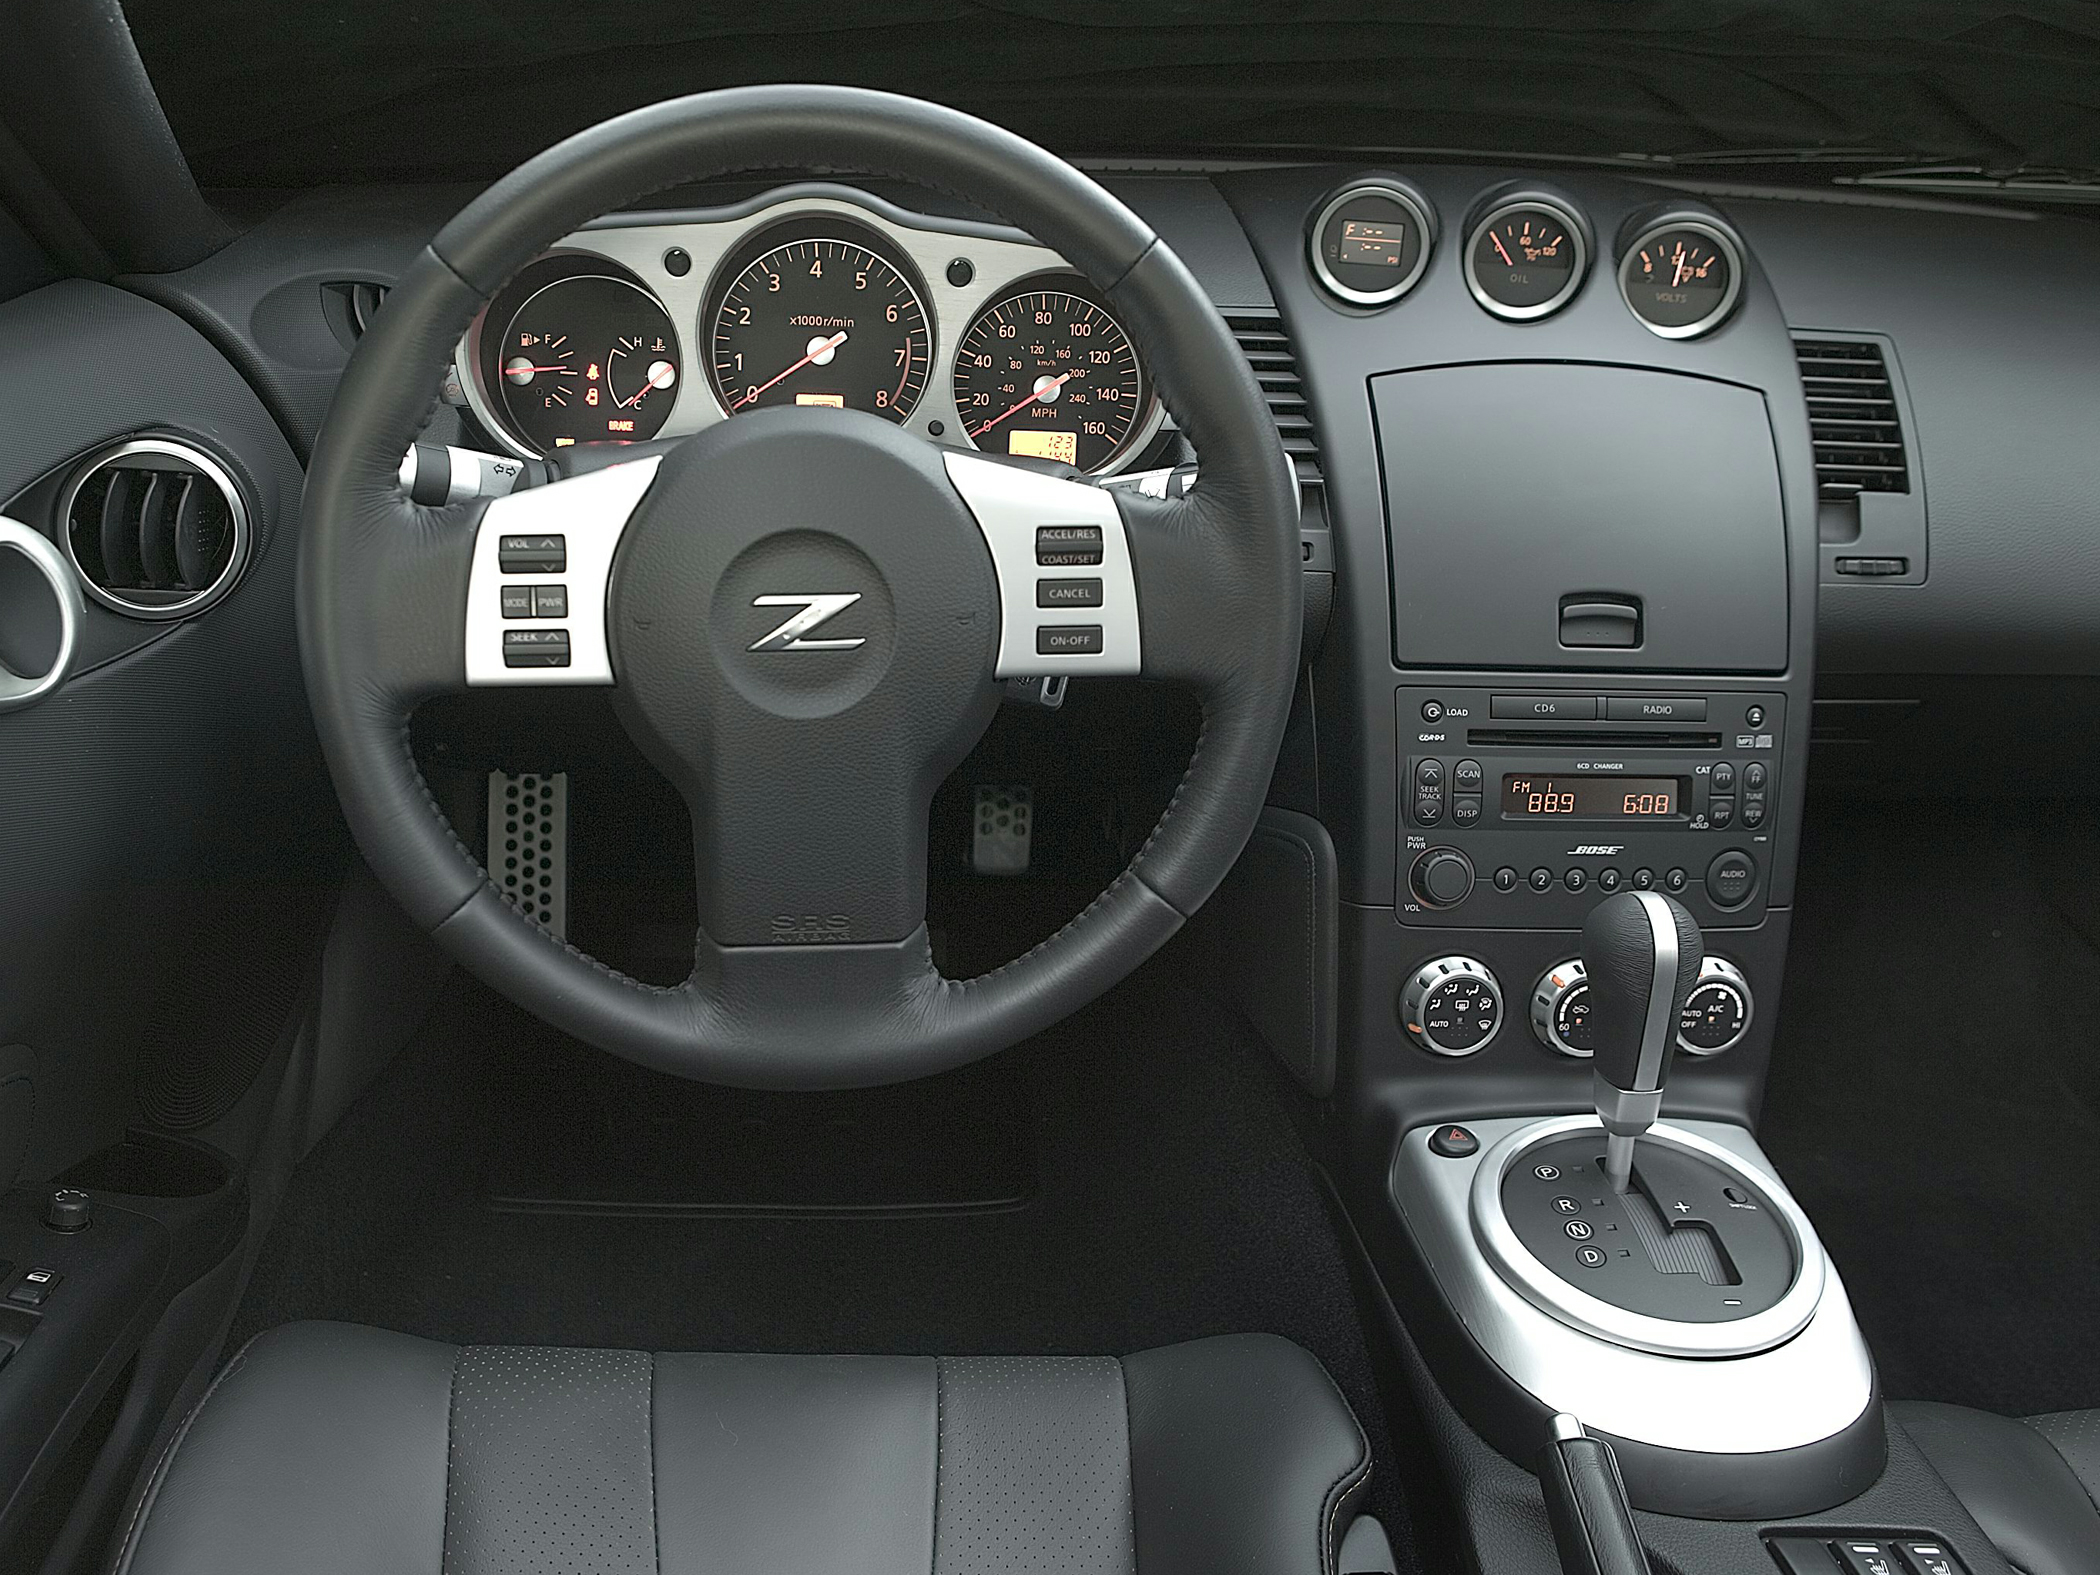 2009 Nissan 350Z